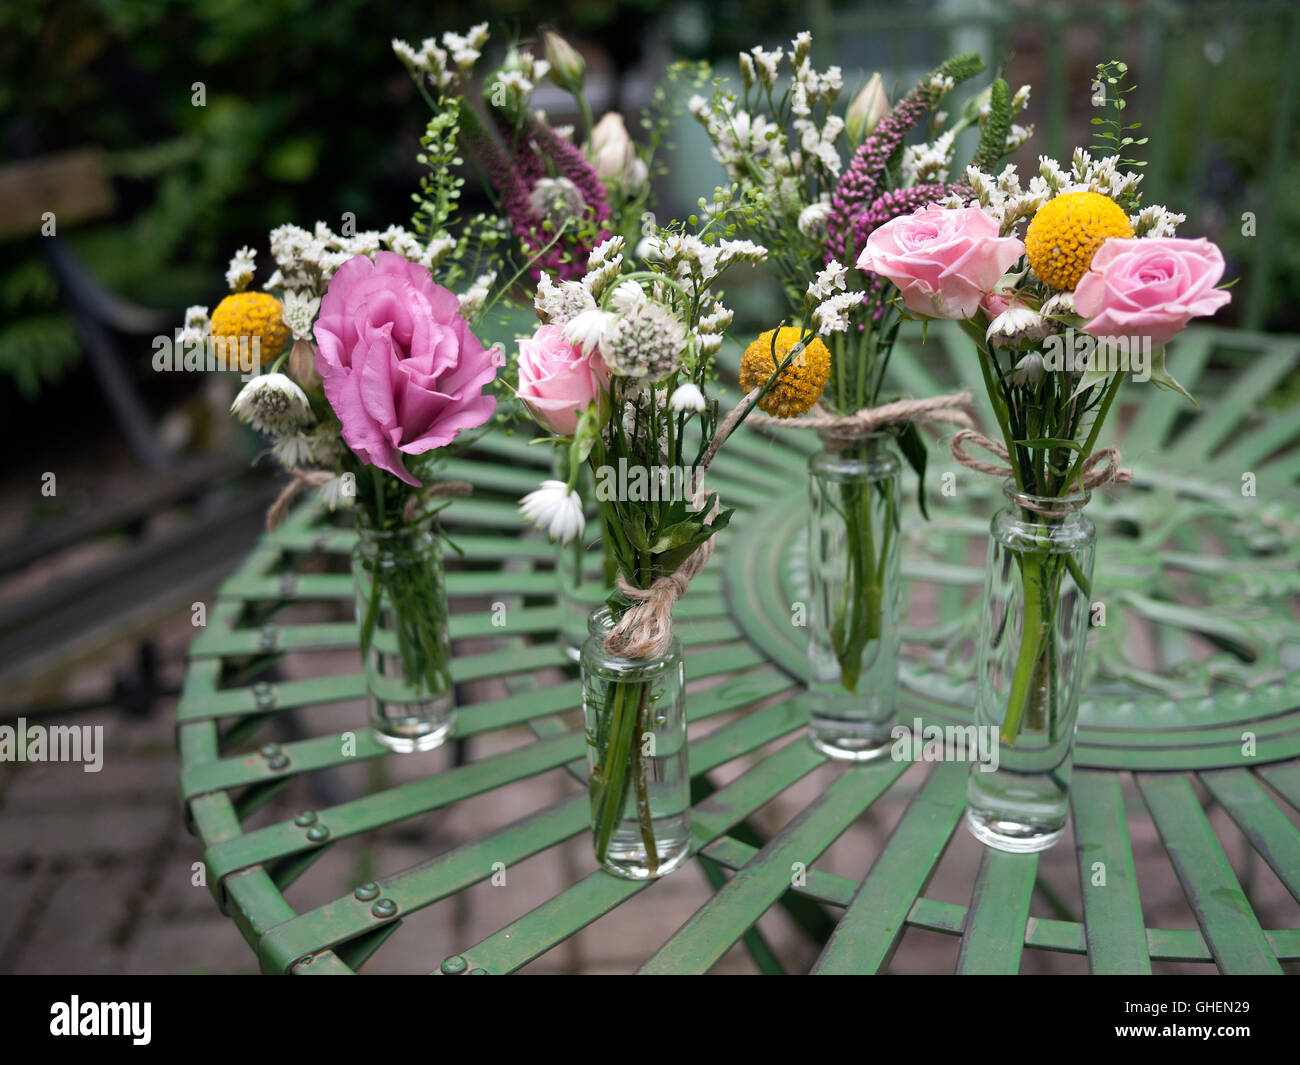 Groupe des petits bouquets de fleurs sauvages sur une table de jardin Banque D'Images